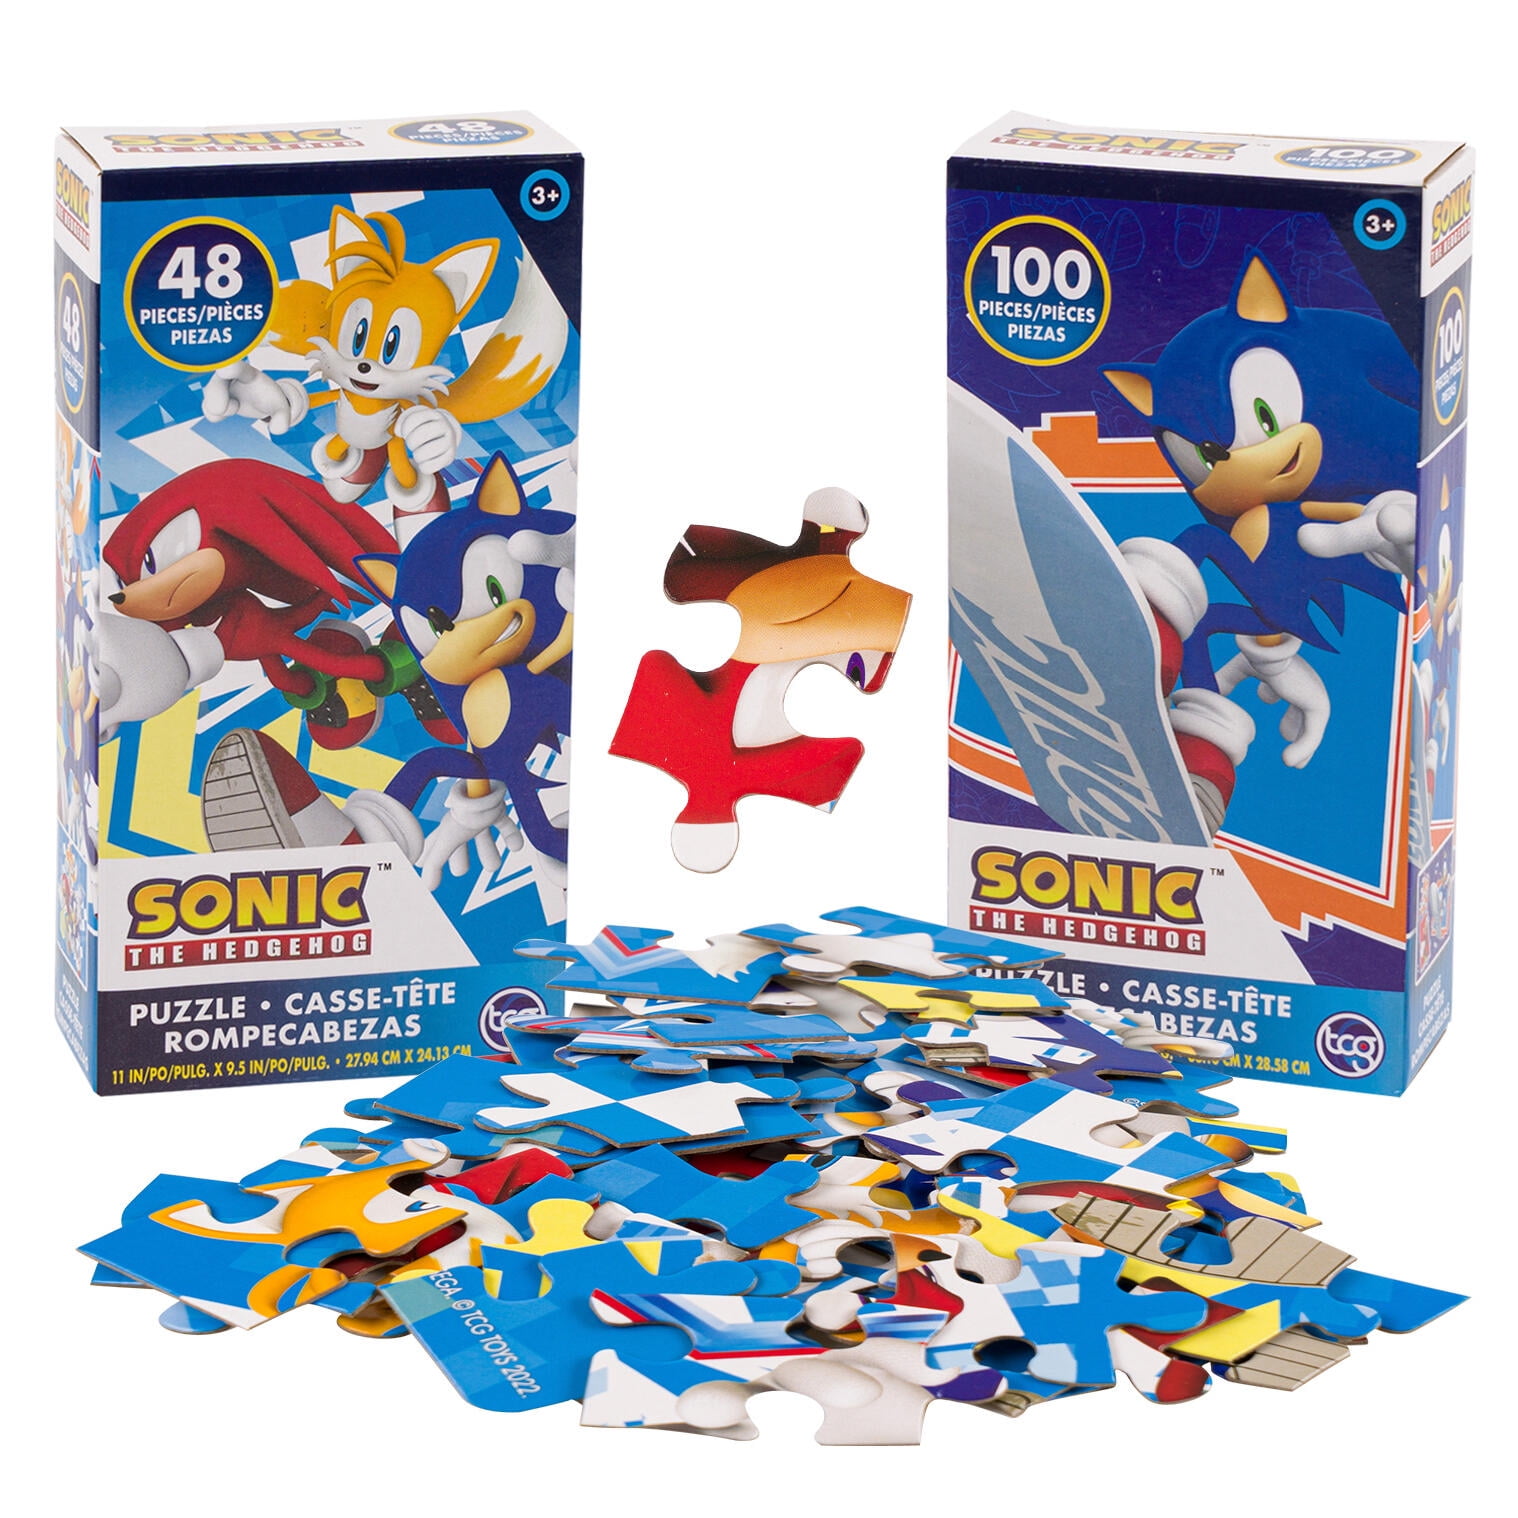 Sonic The Hedgehog - Set Mug et puzzle Sonic - Puzzle - LDLC